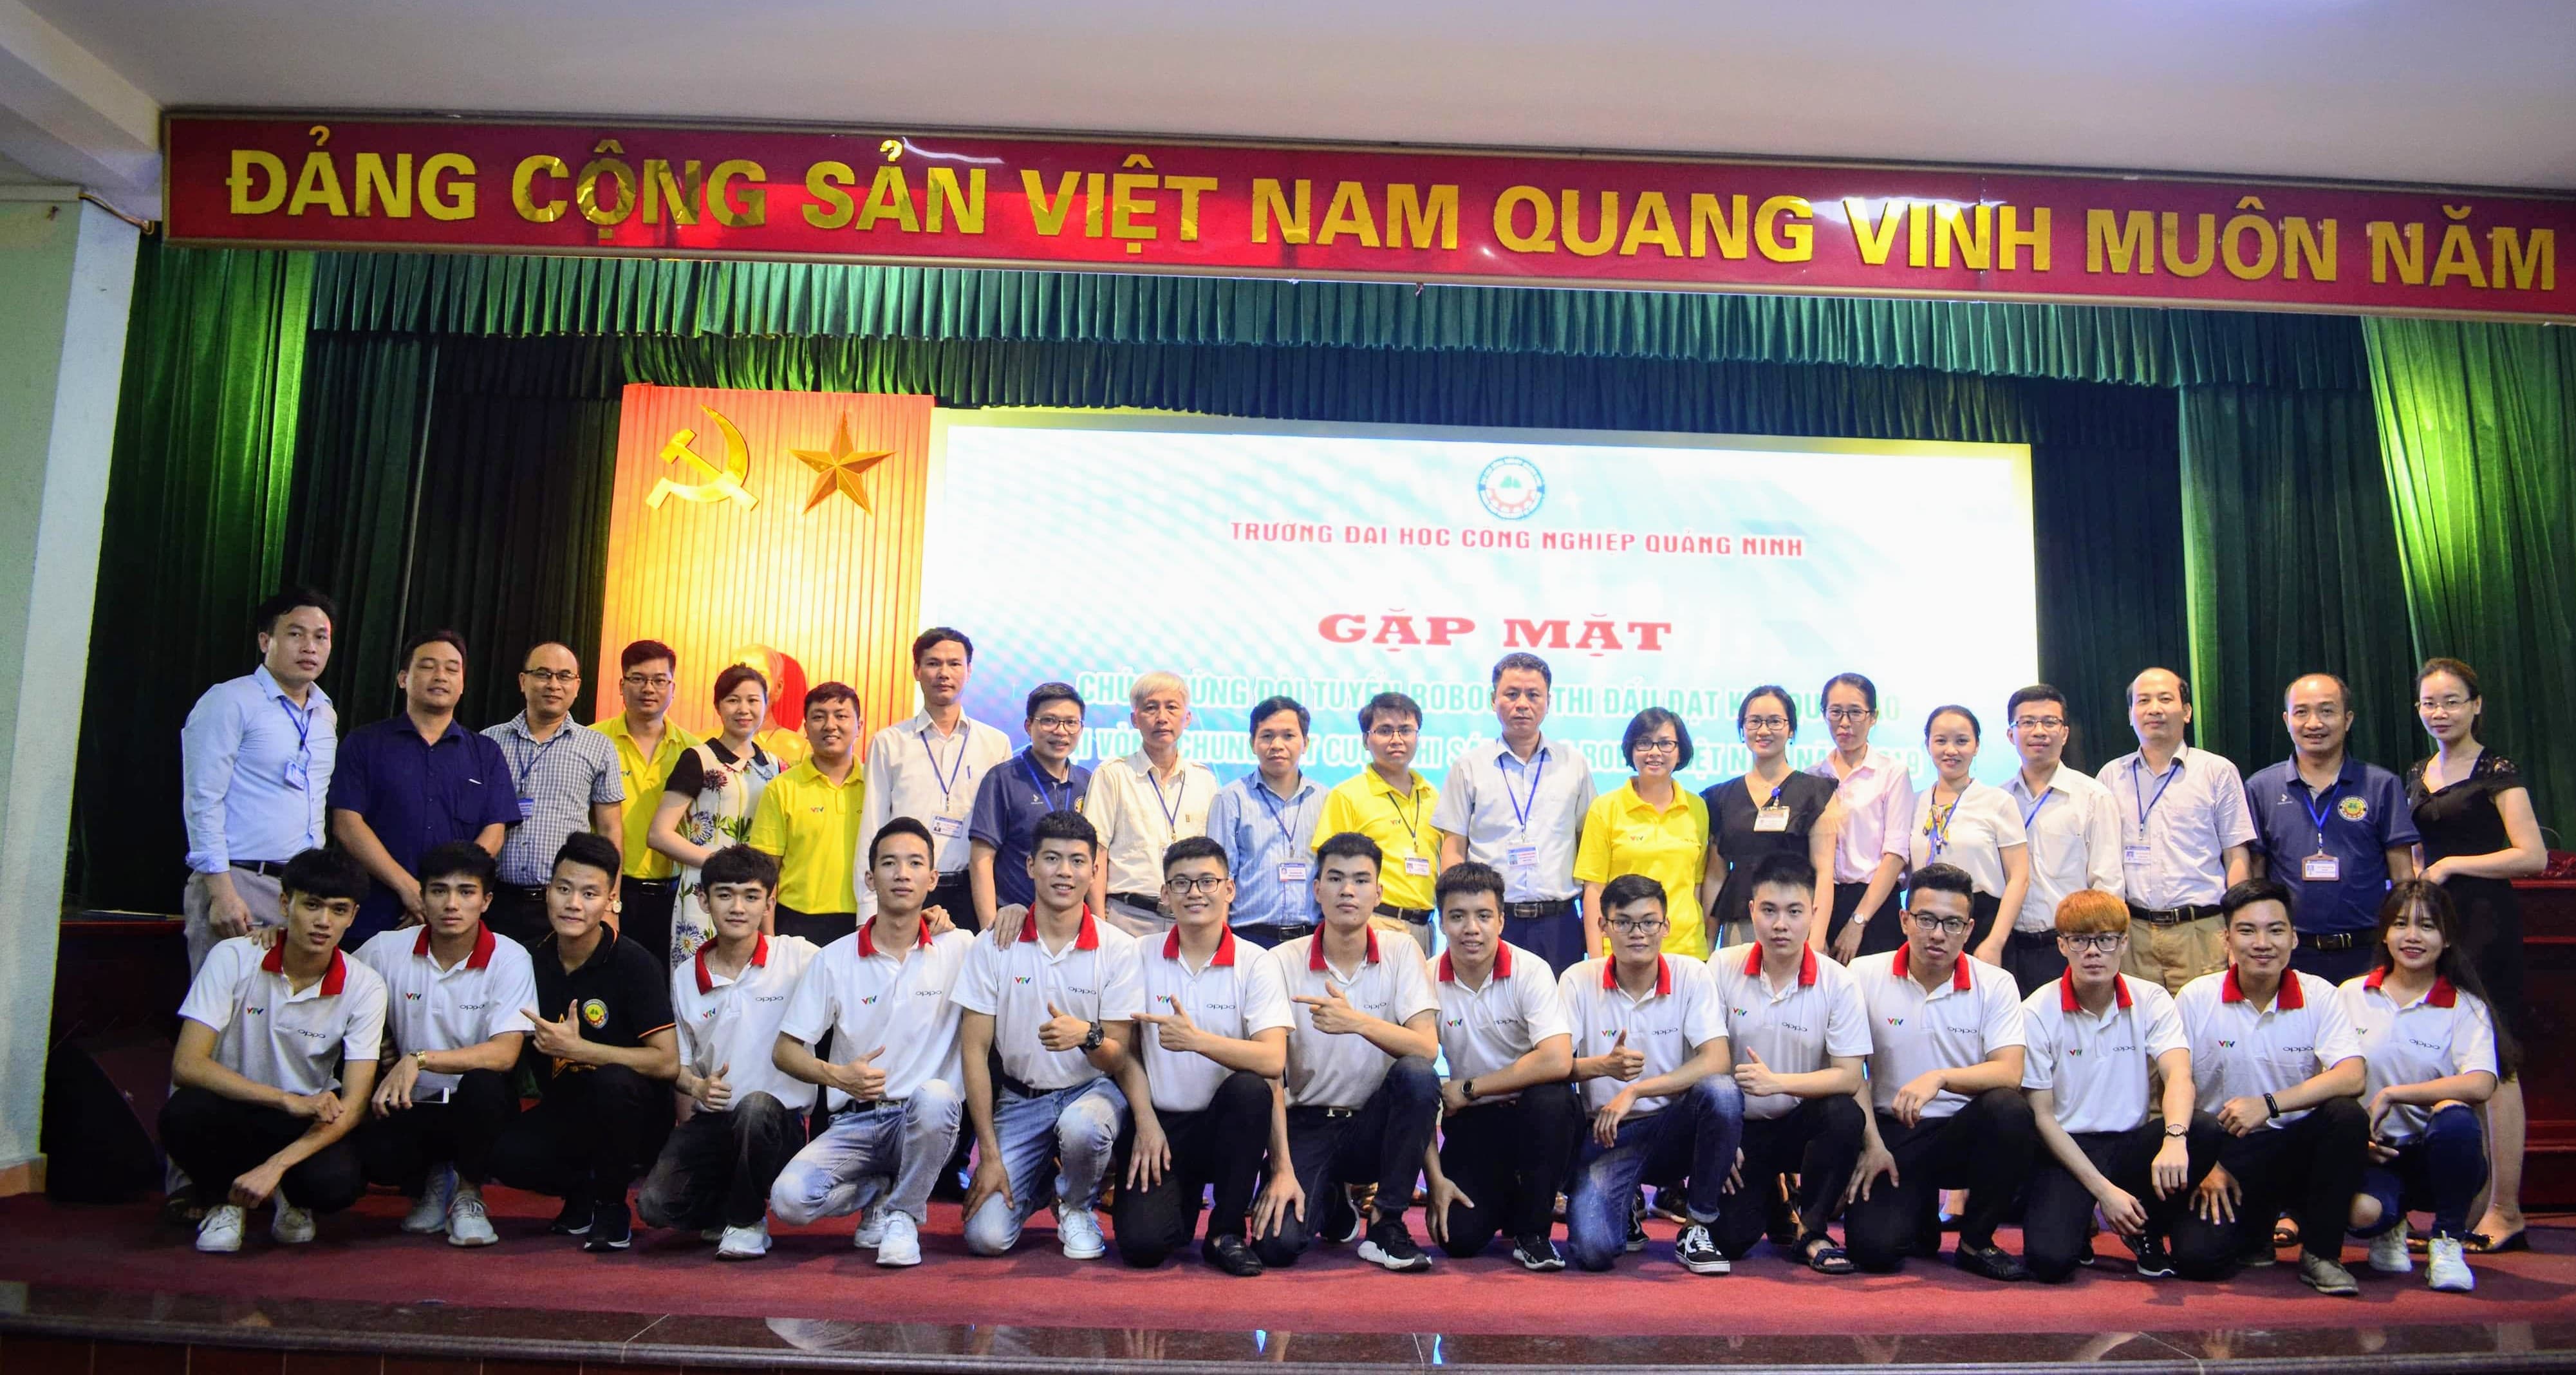 Gặp mặt, tuyên dương đội tuyển Robocon trường ĐH Công nghiệp Quảng Ninh